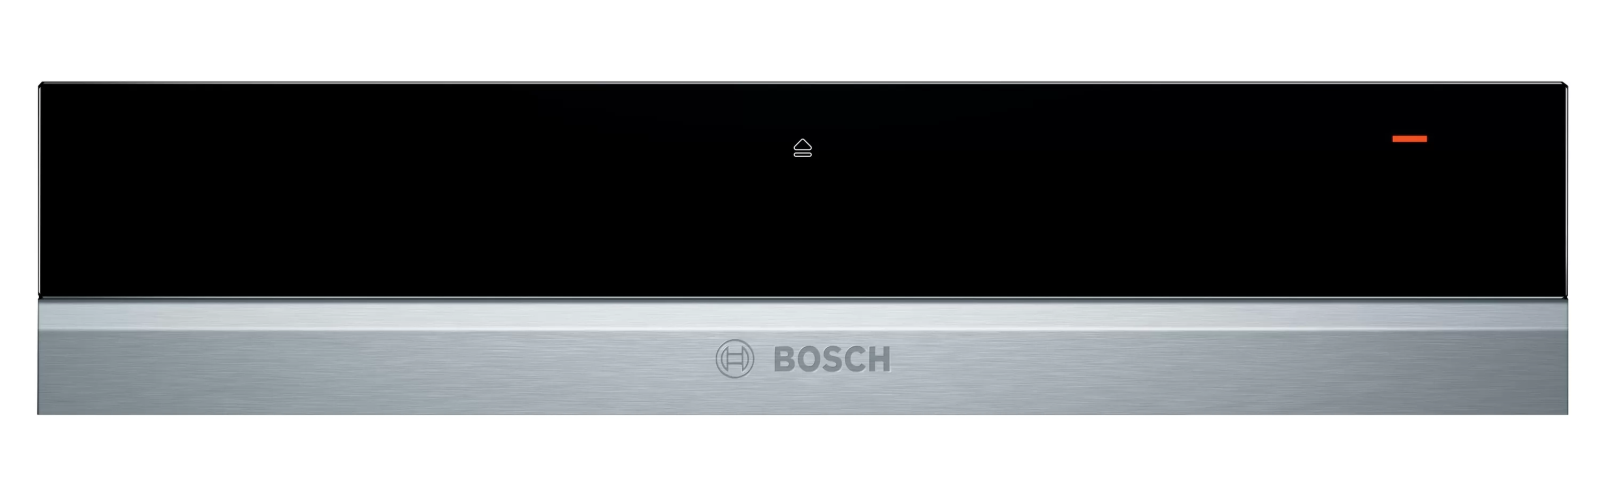 Serie 8 | Khay Giữ Ấm Bosch BIC630NS1 Thông Minh, Tích Hợp Nhiều Tính Năng Ưu Việt